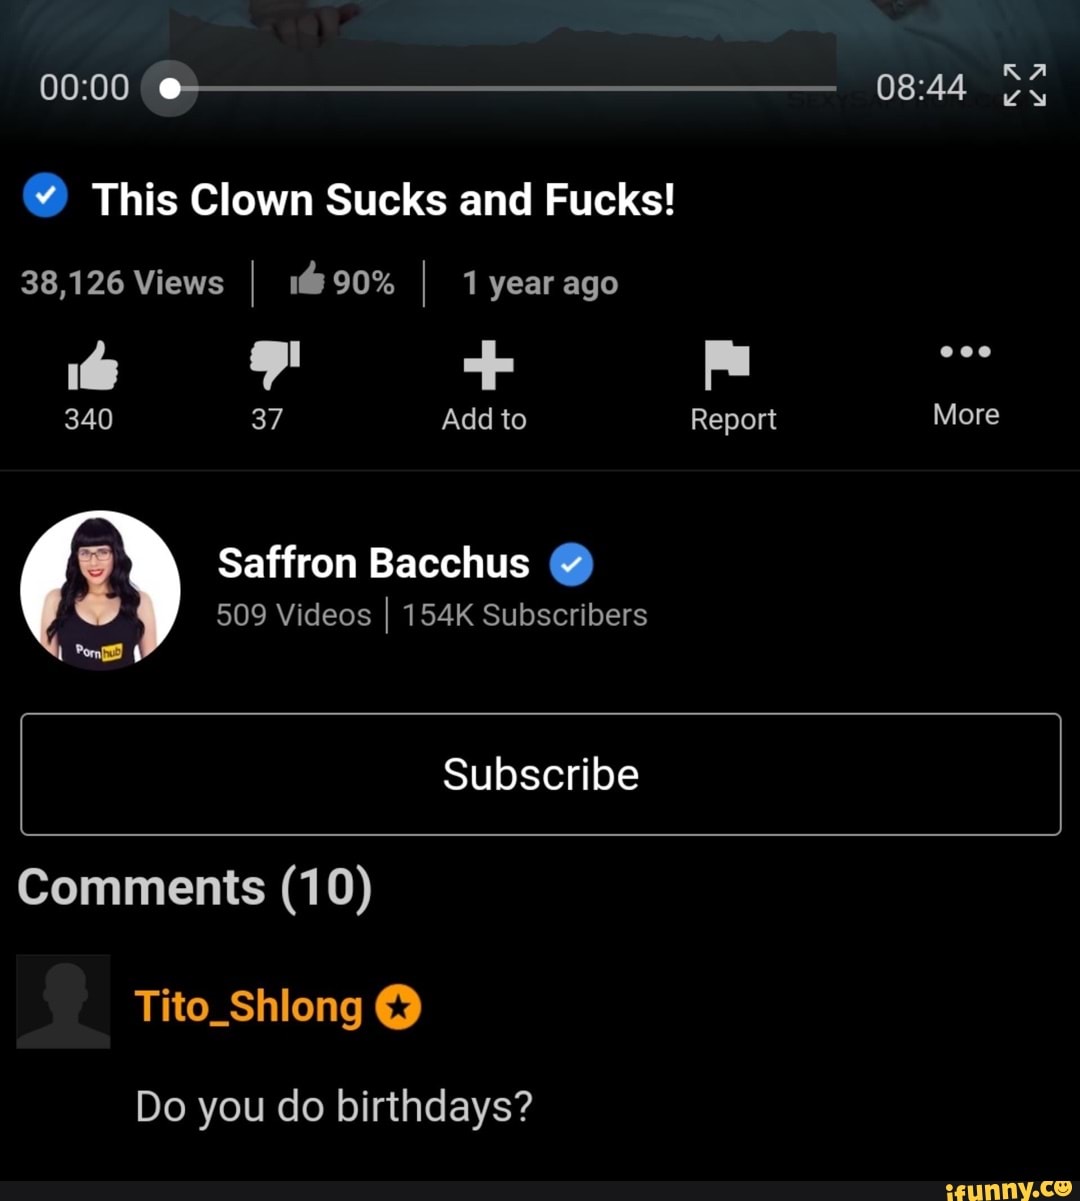 Saffron Bacchus